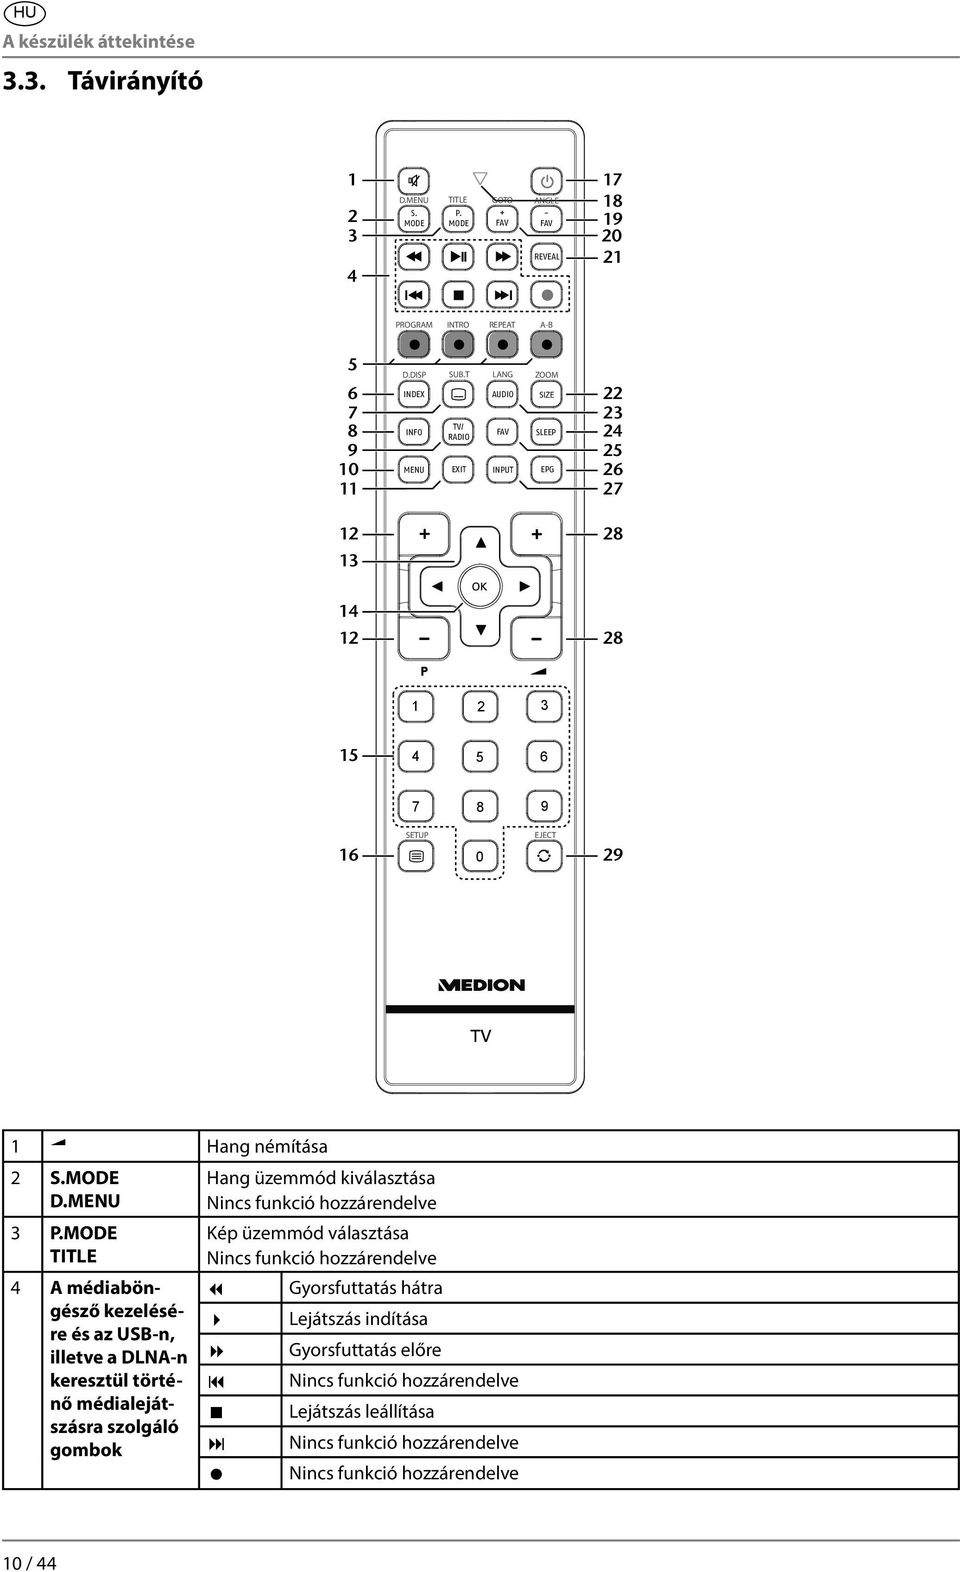 MODE TITLE 4 A médiaböngésző kezelésére és az USB-n, illetve a DLNA-n keresztül történő médialejátszásra szolgáló gombok Hang üzemmód kiválasztása Nincs funkció hozzárendelve Kép üzemmód